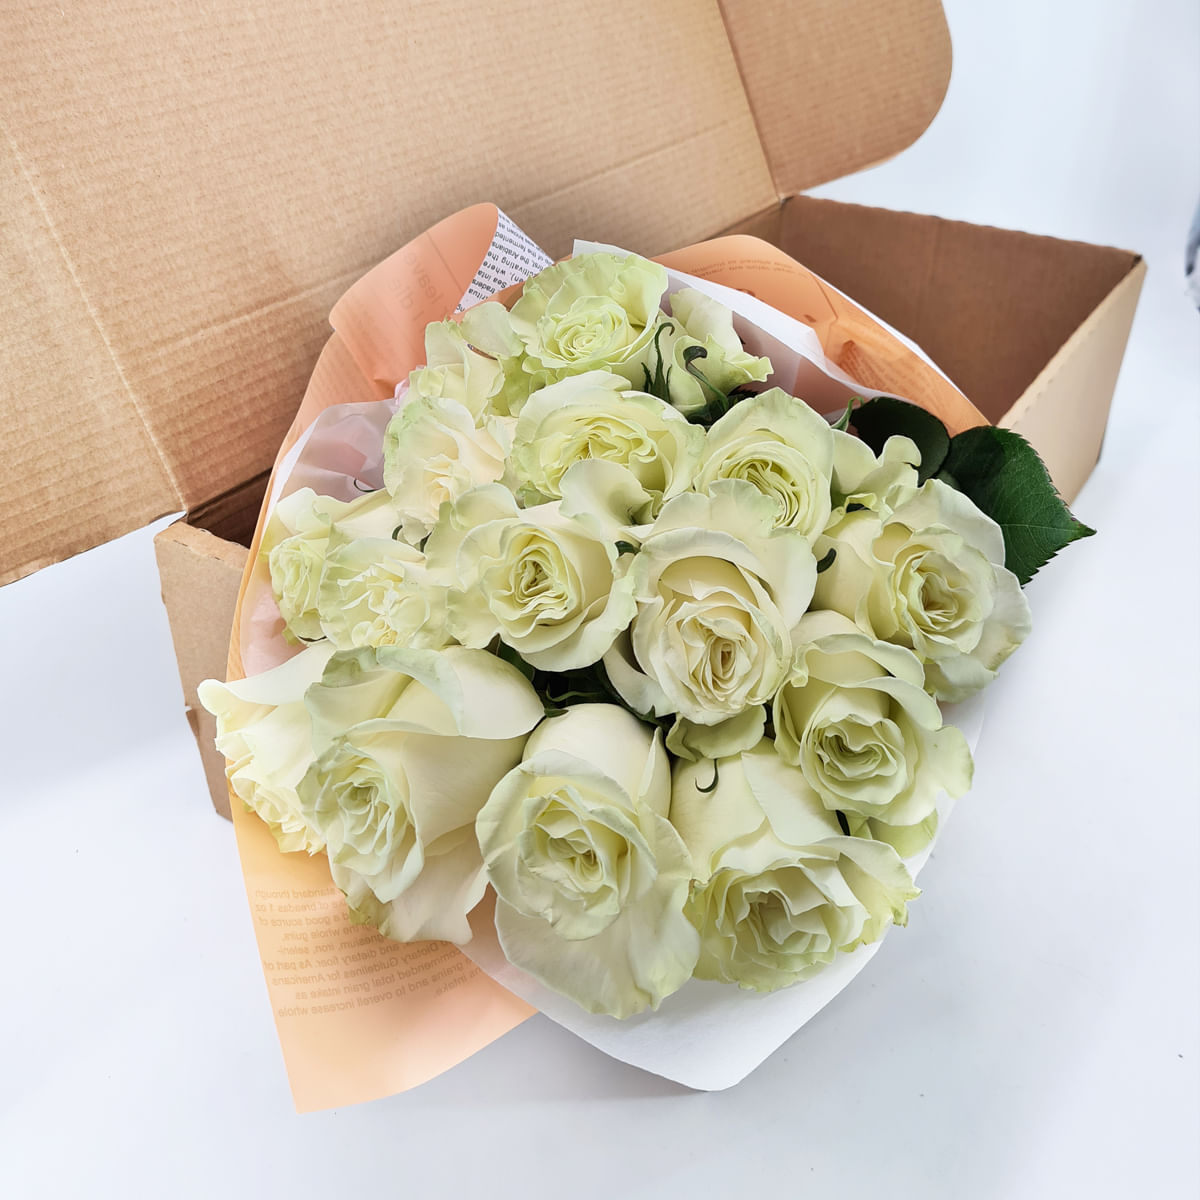 Buchet de 15 trandafiri albi in cutie Floria imagine 2022